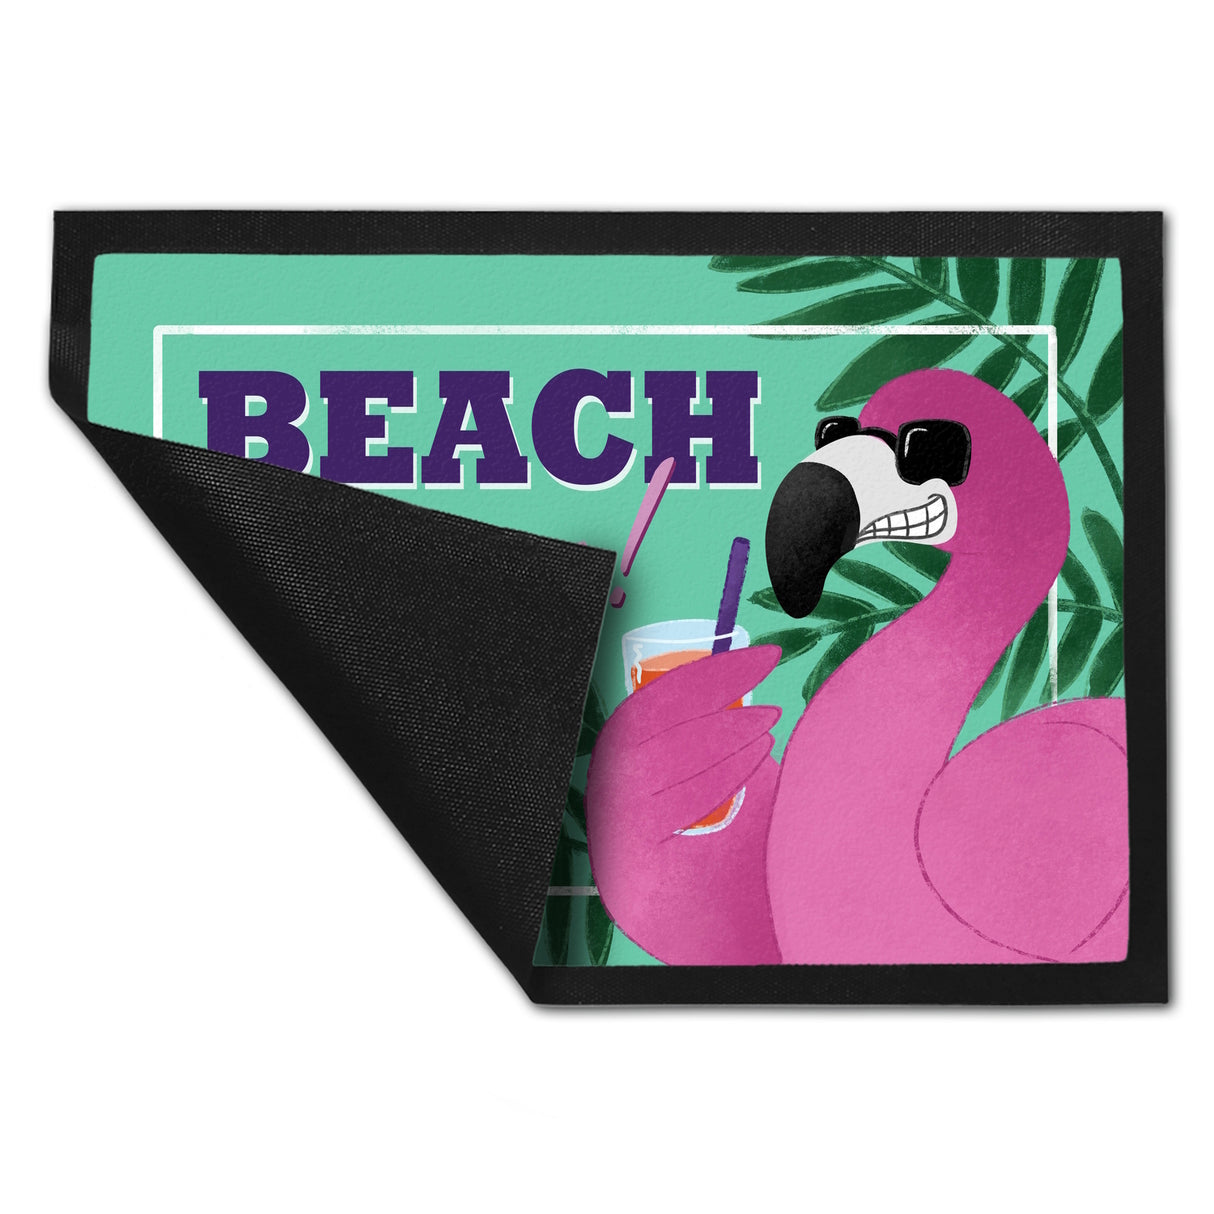 Beach please Fußmatte mit coolem Flamingo